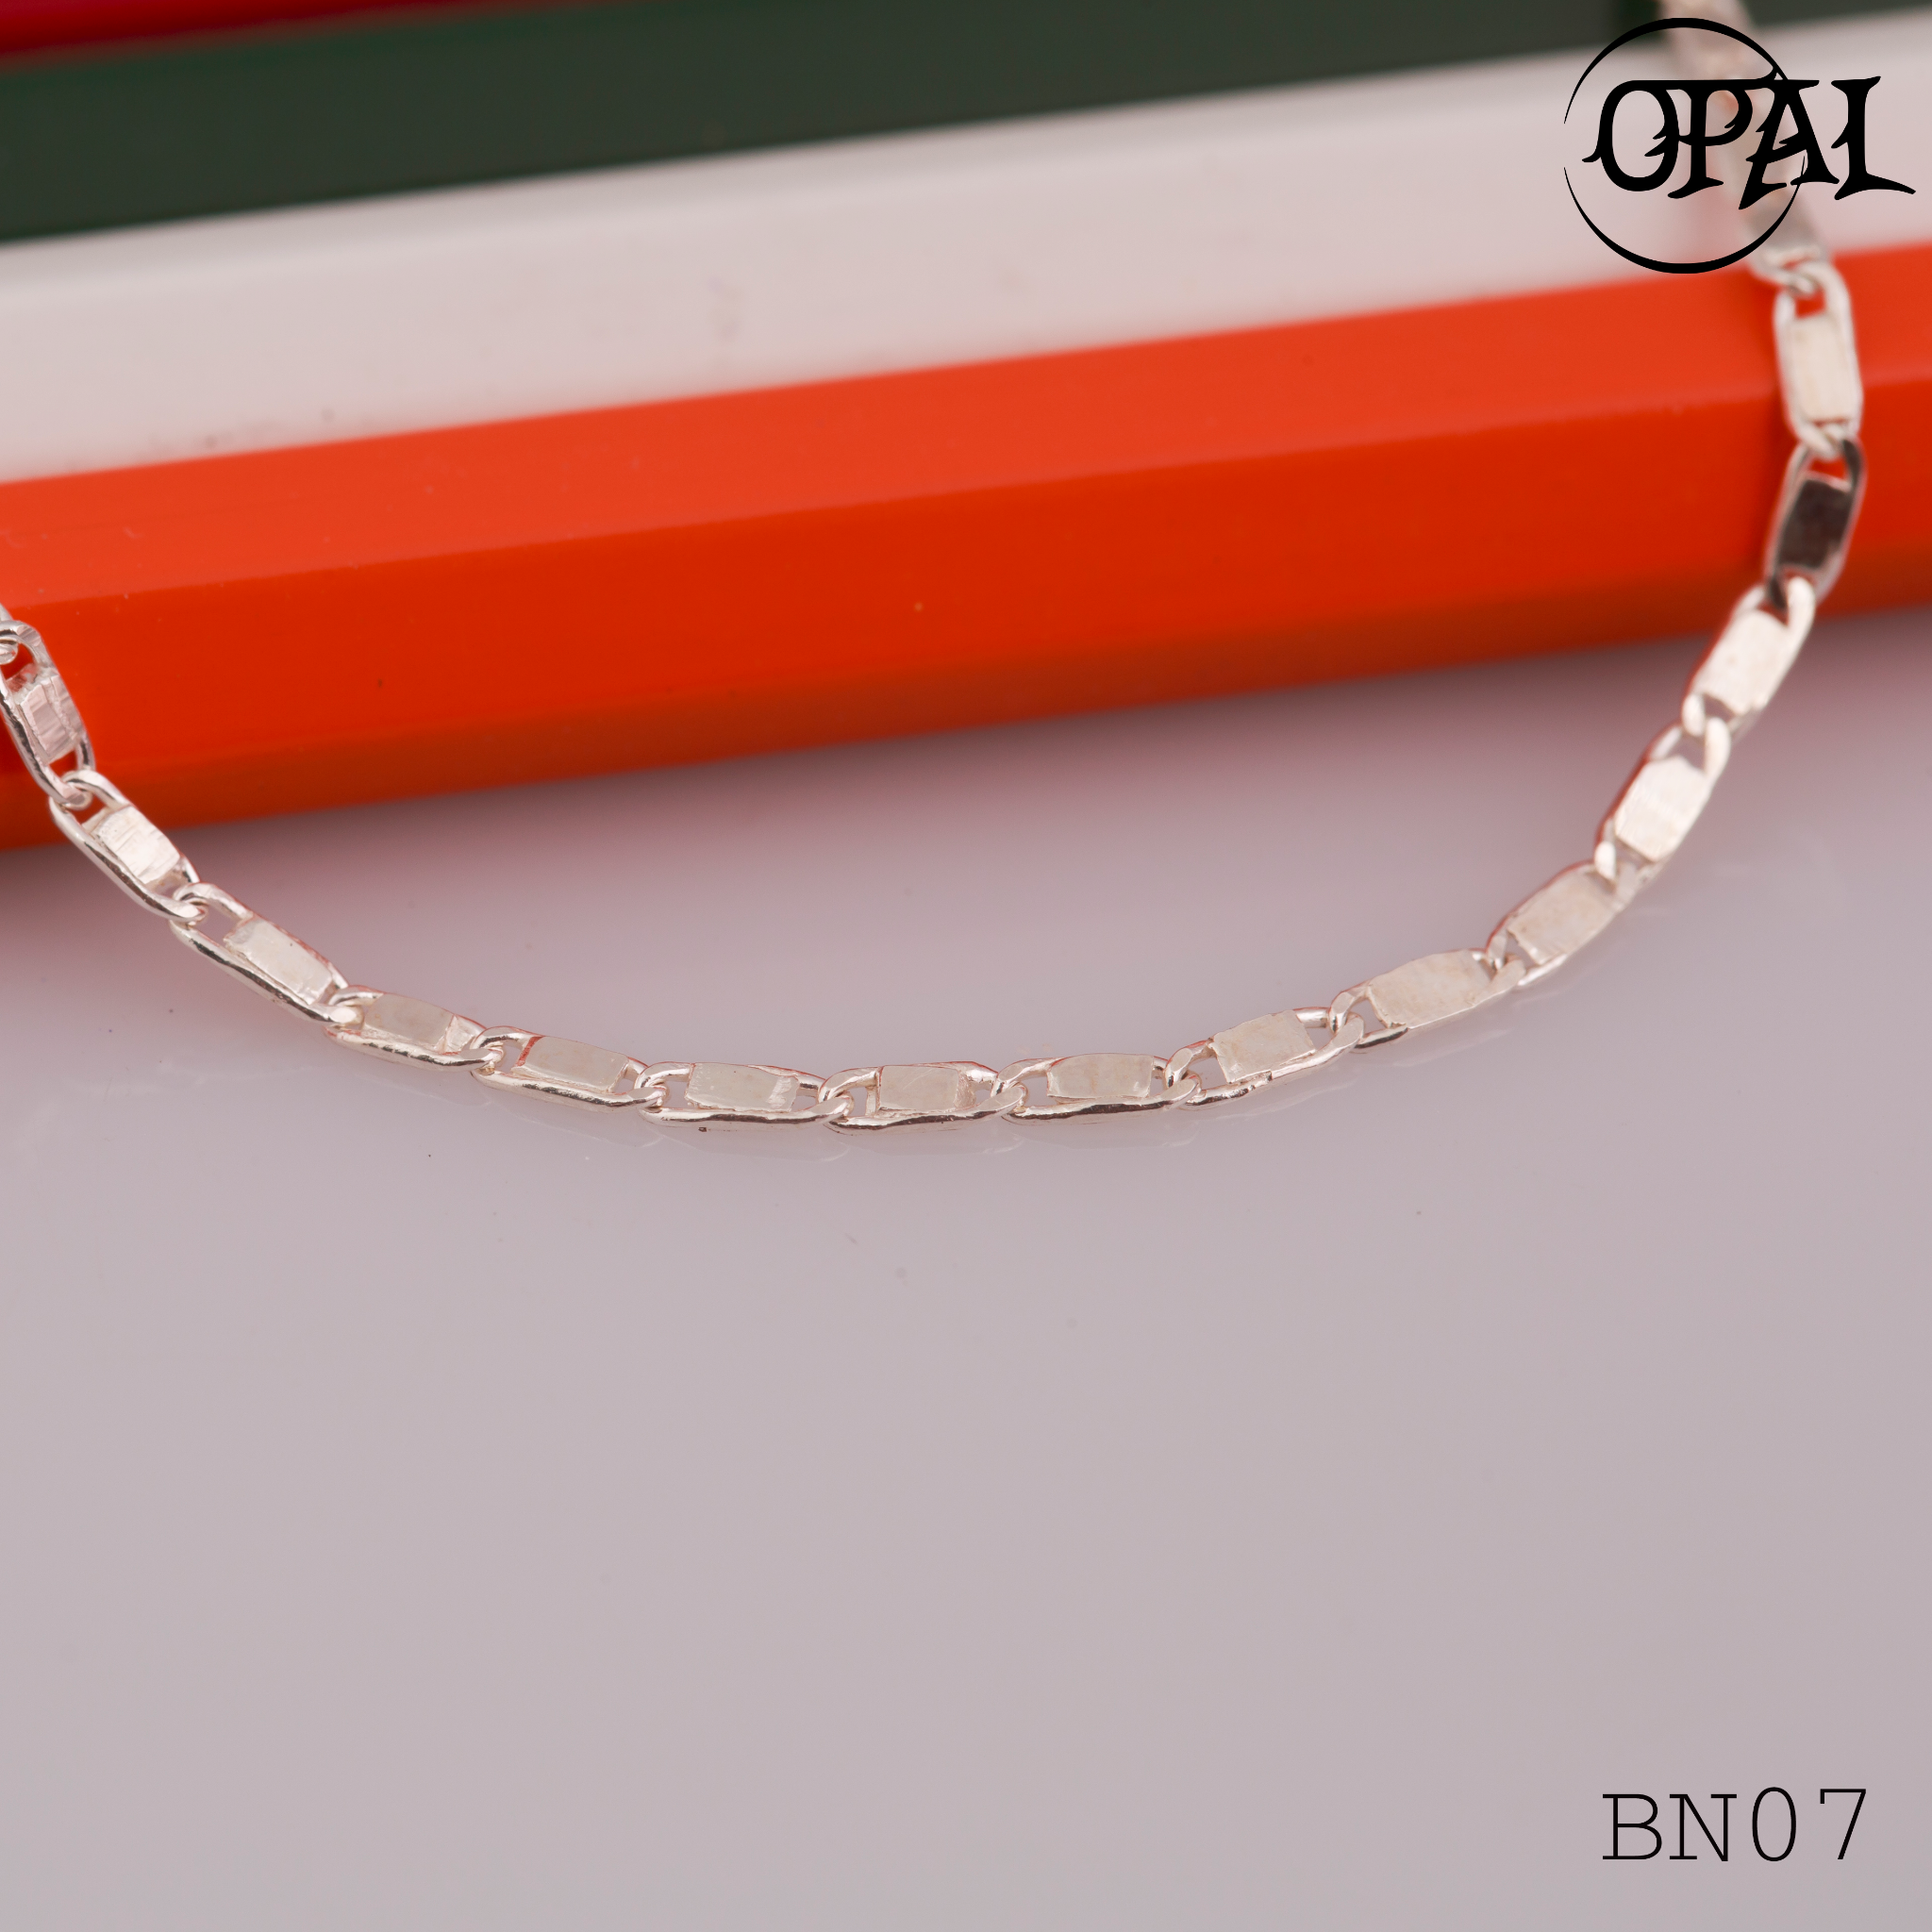  BN07- Dây chuyền bạc dành cho bé Opal 